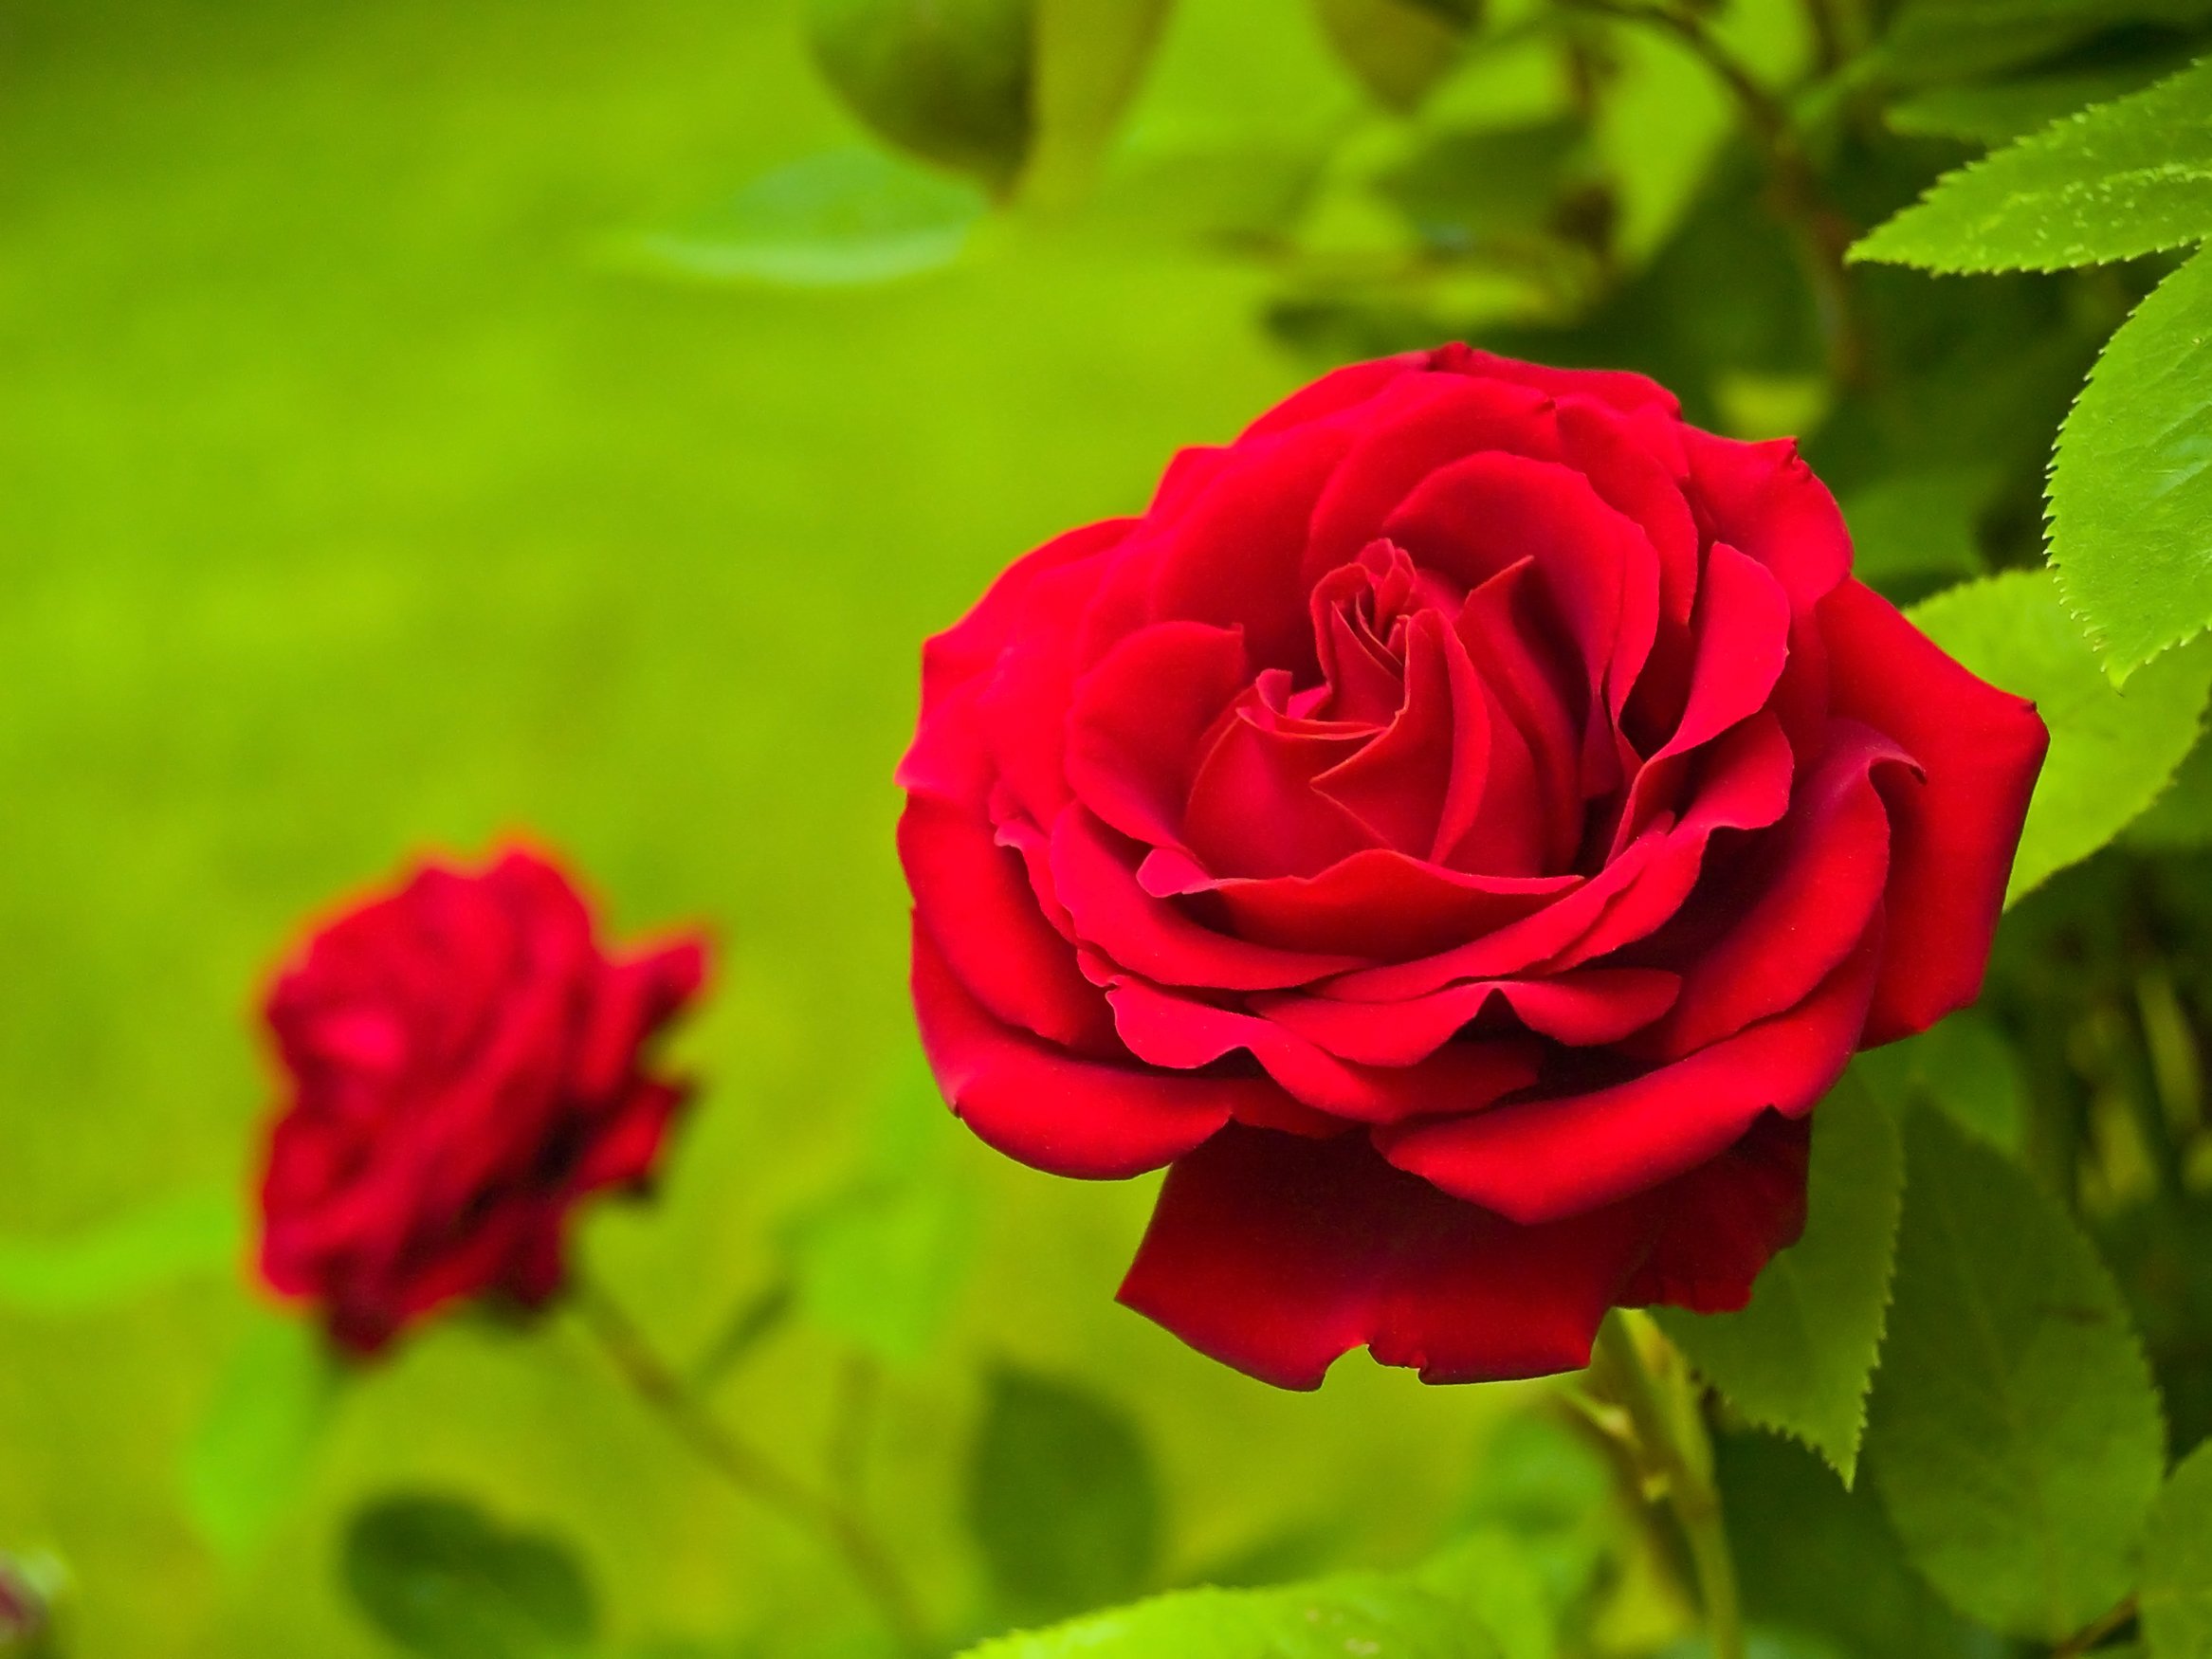 National Flower of Rwanda -Red rose